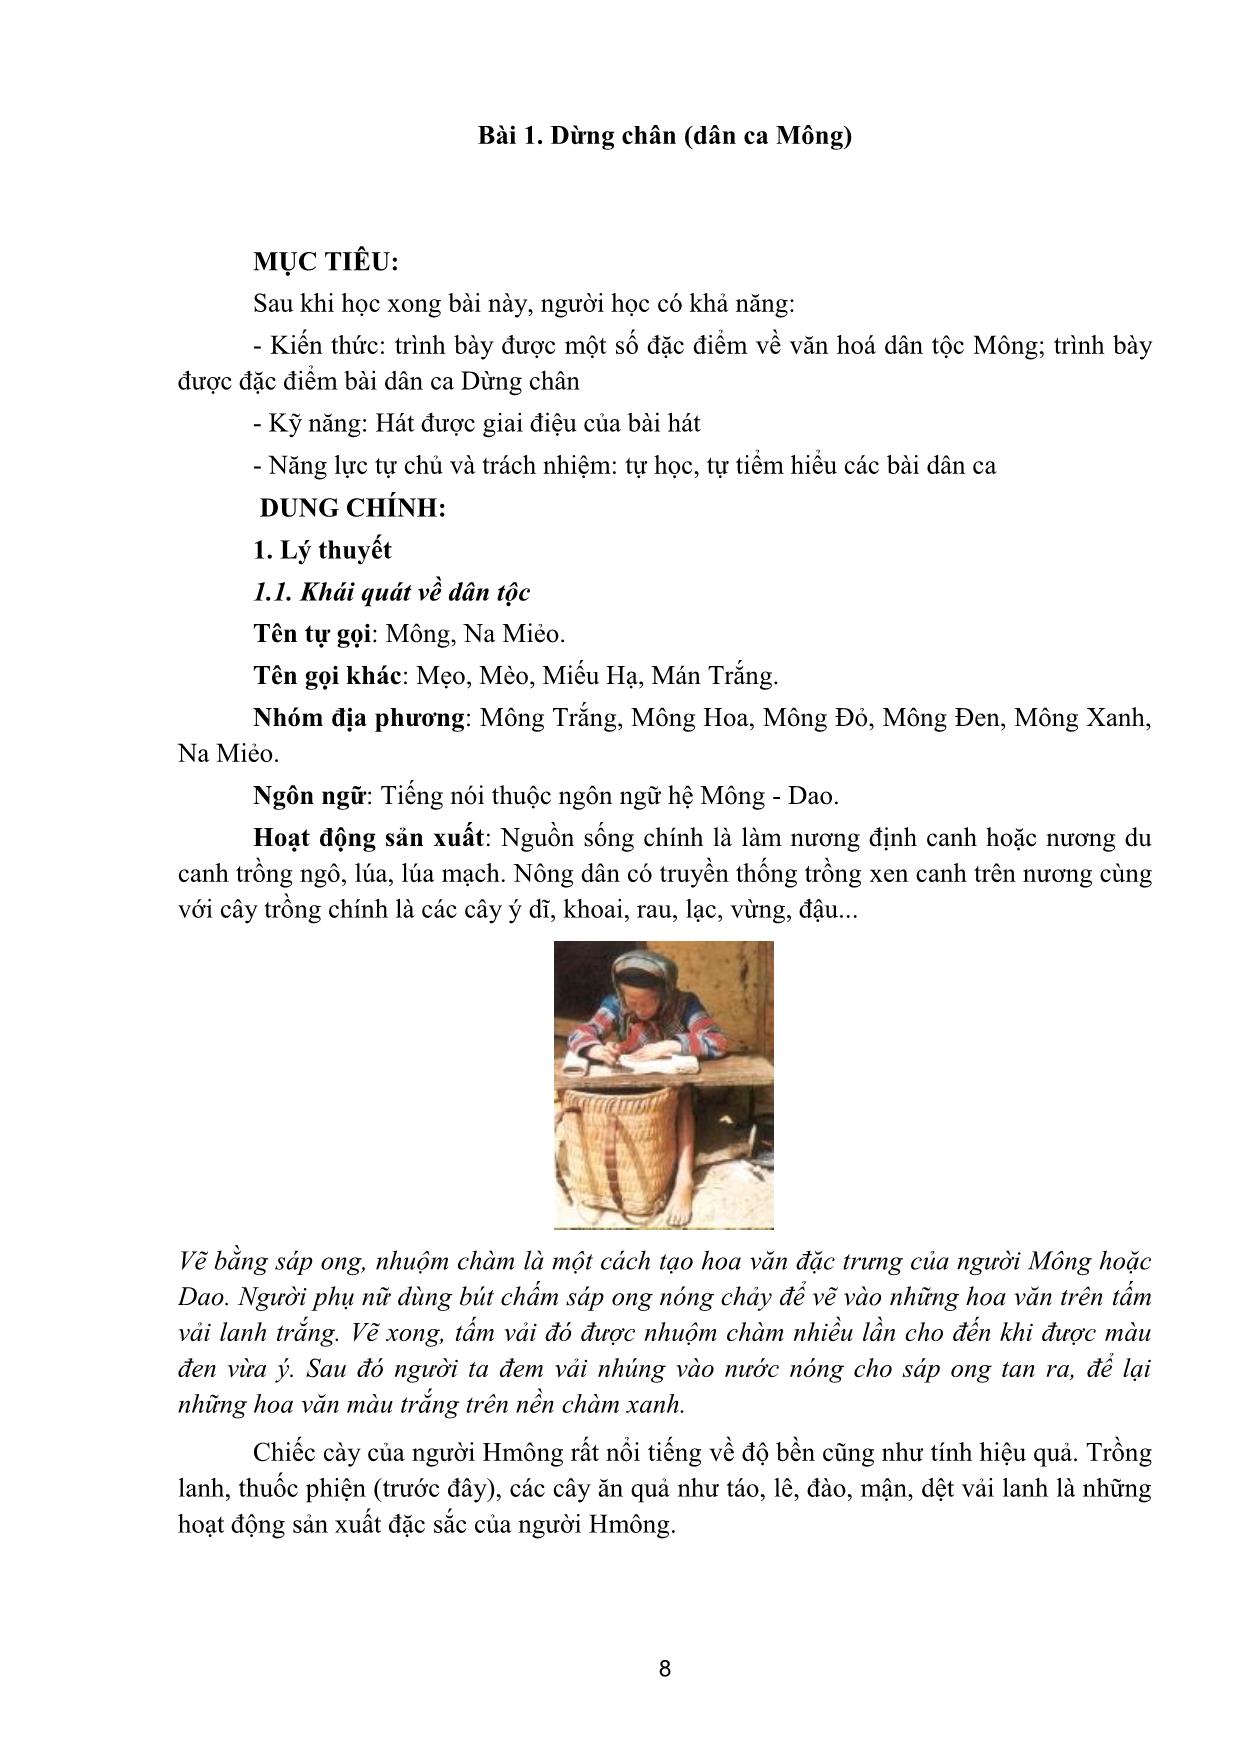 Giáo trình Thanh nhạc, biểu diễn nhạc cụ truyền thống, organ - Hát dân ca trang 8